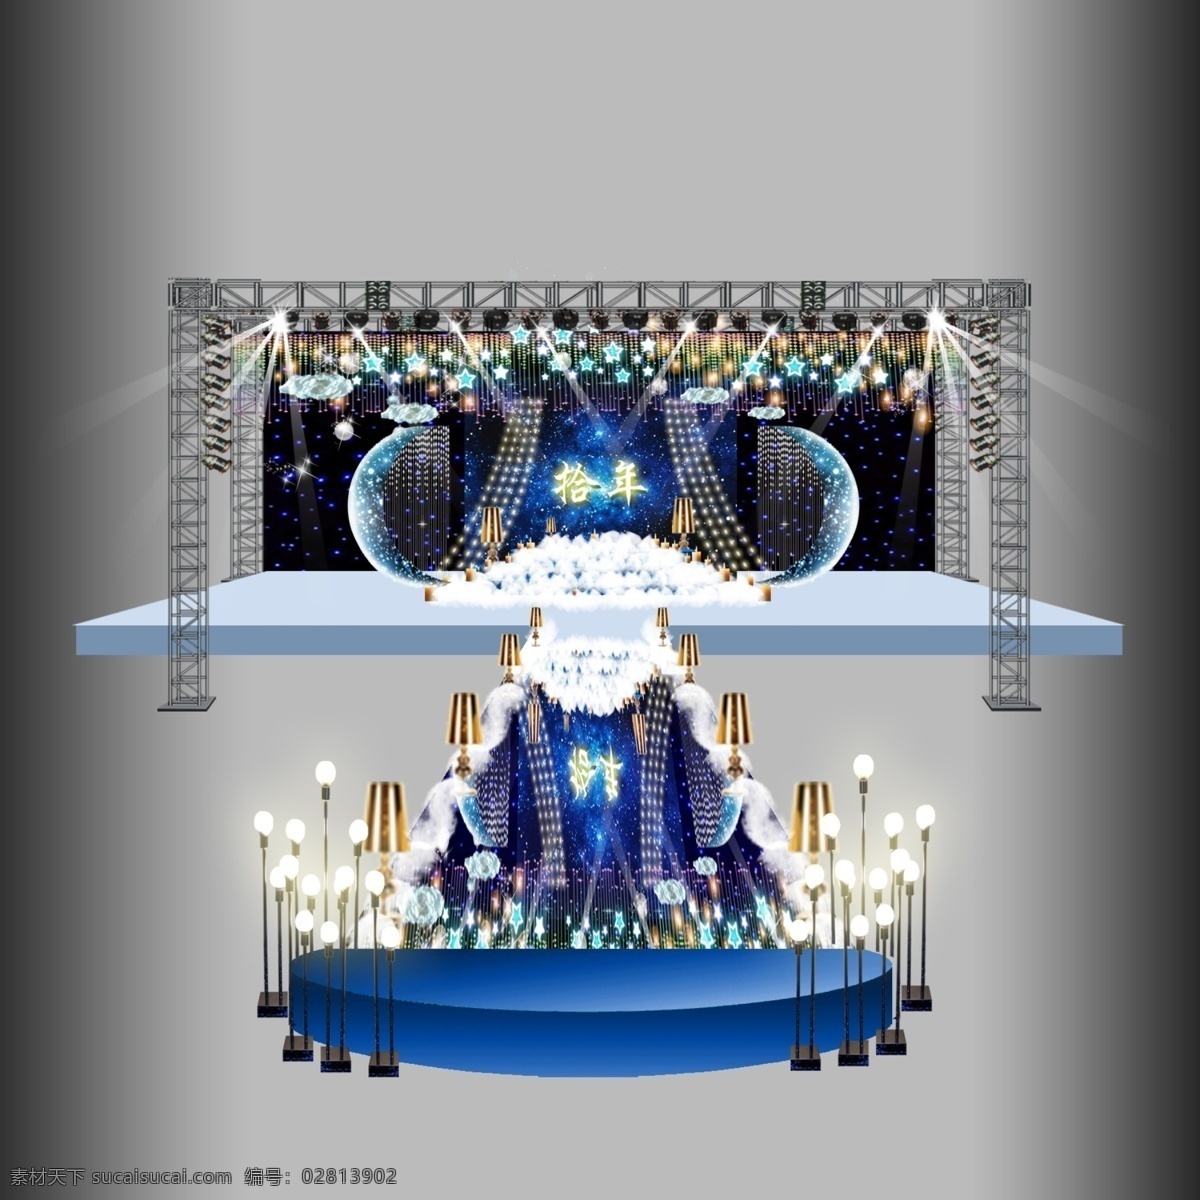 星空月牙婚礼 婚礼主题 婚庆舞台 婚礼舞台 婚礼场景 星空婚礼 蓝色婚礼 广告平面 环境设计 效果图